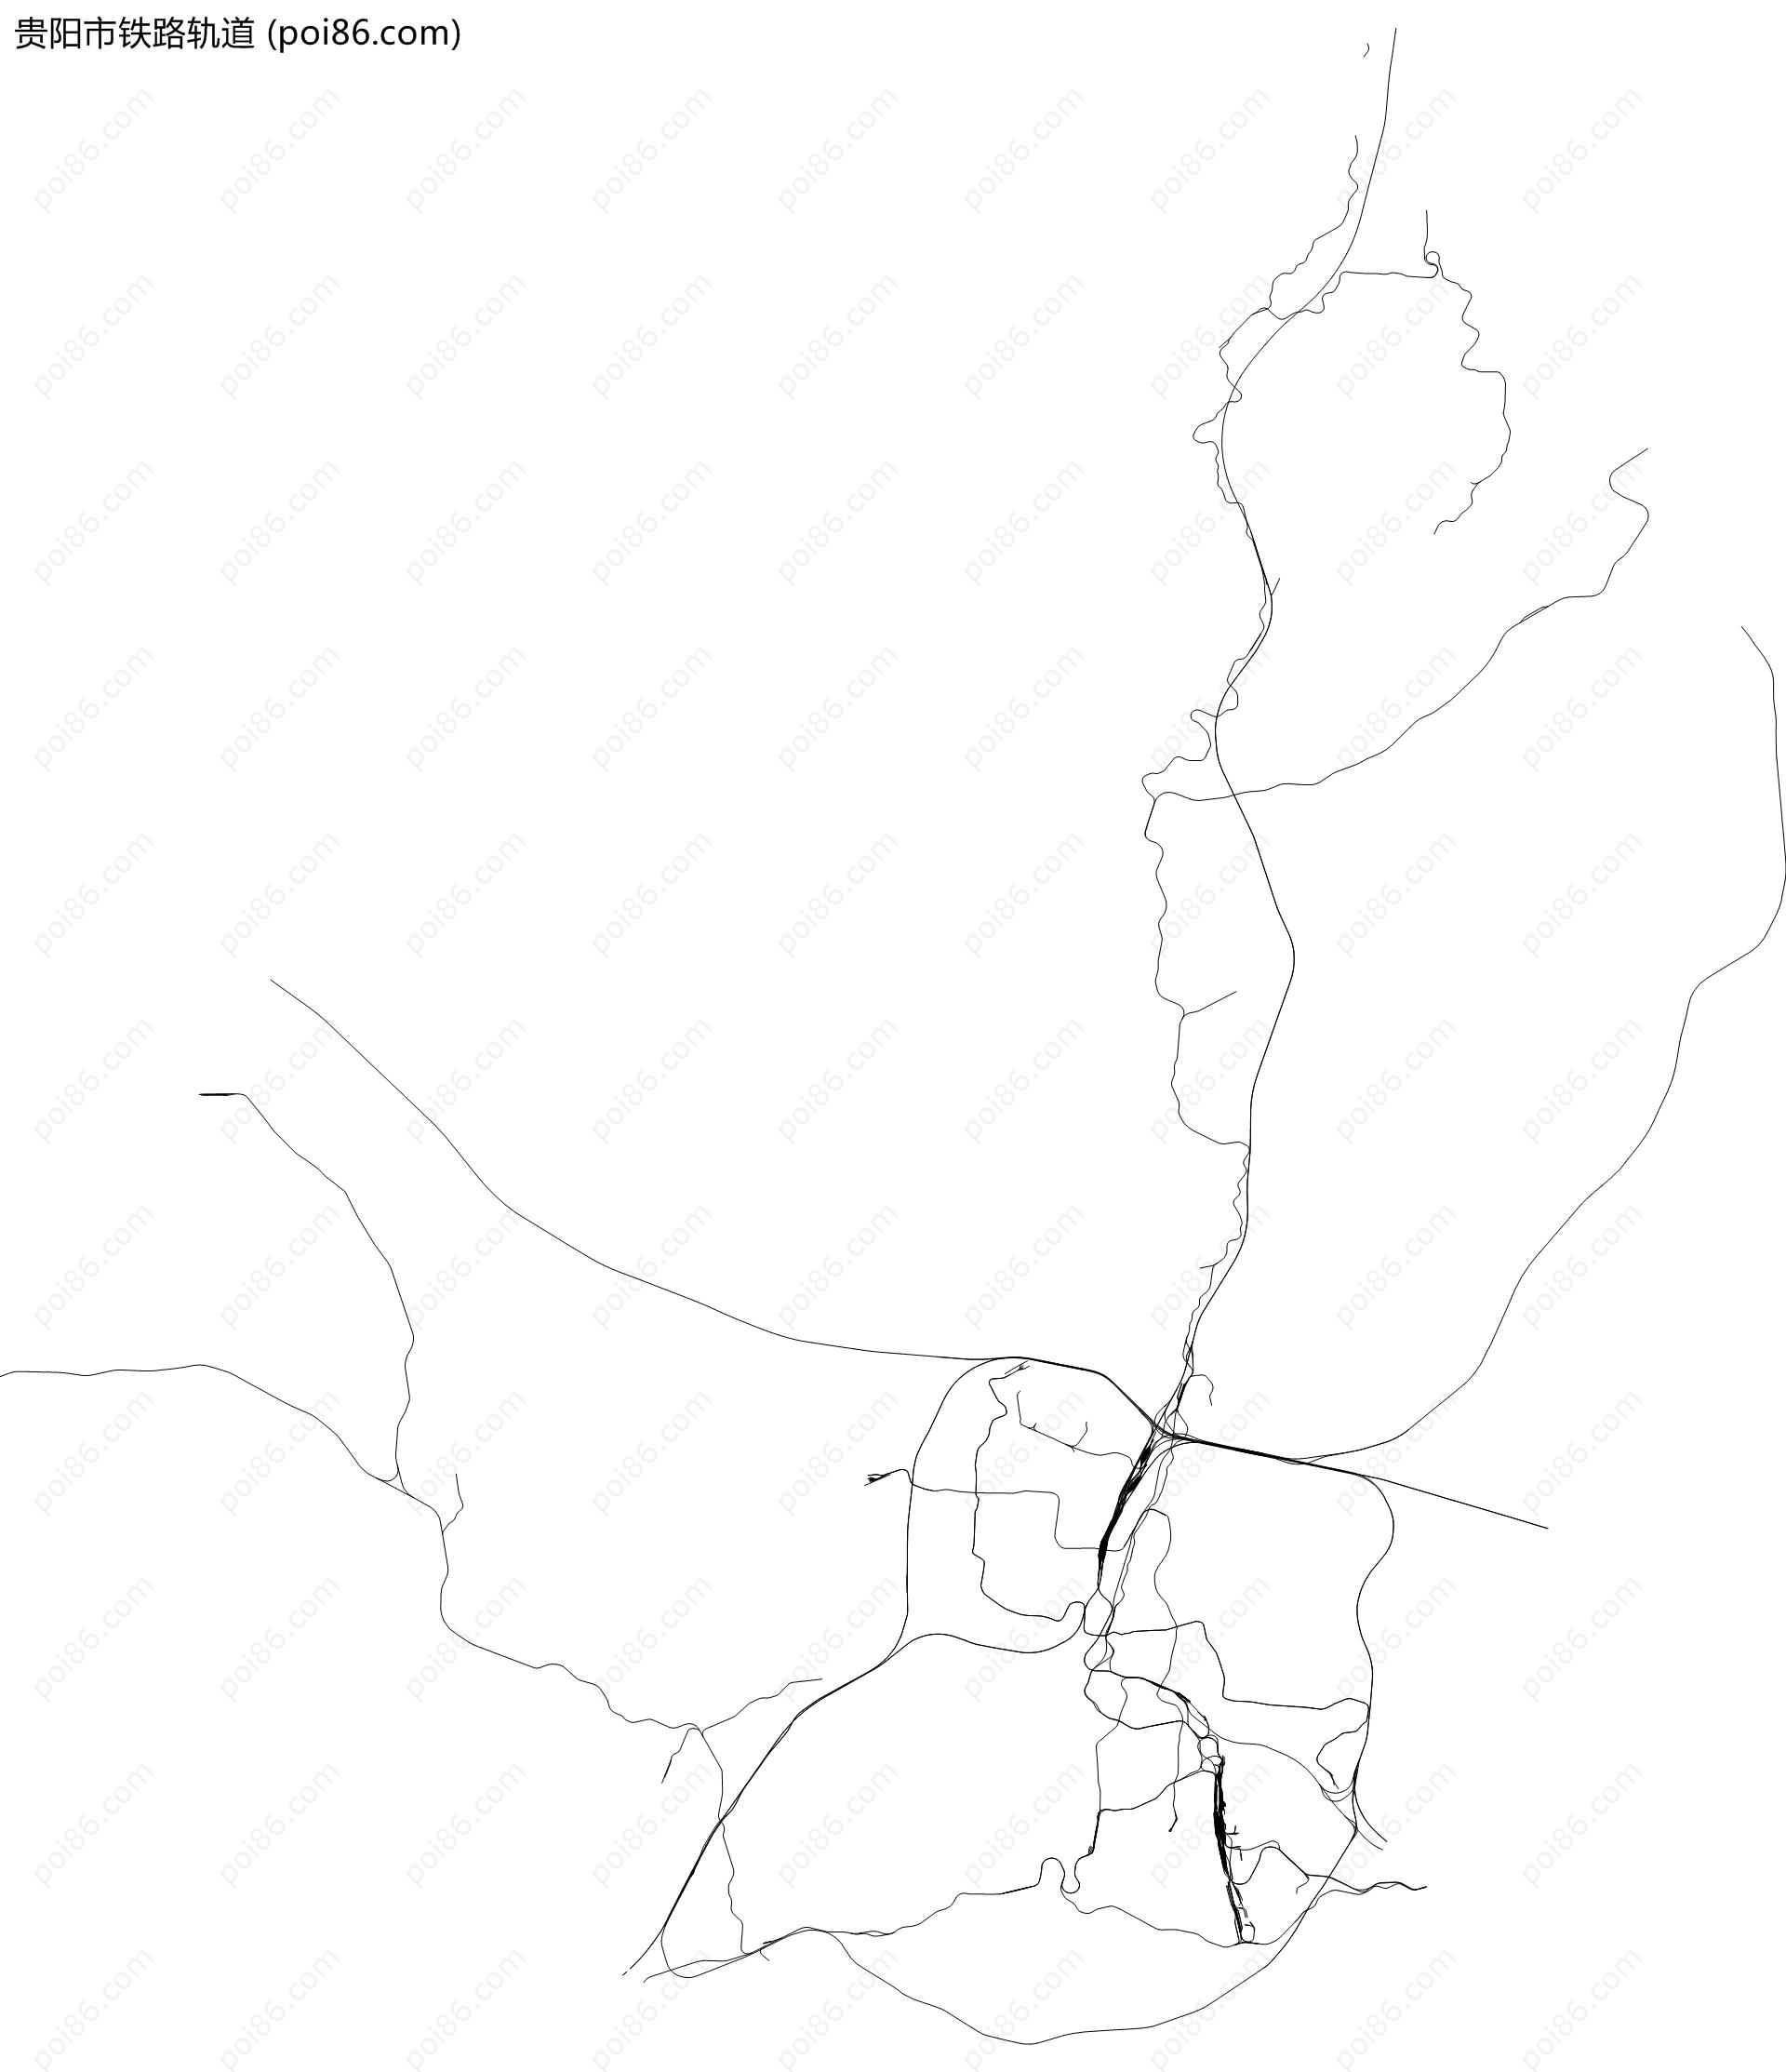 贵阳市铁路轨道地图